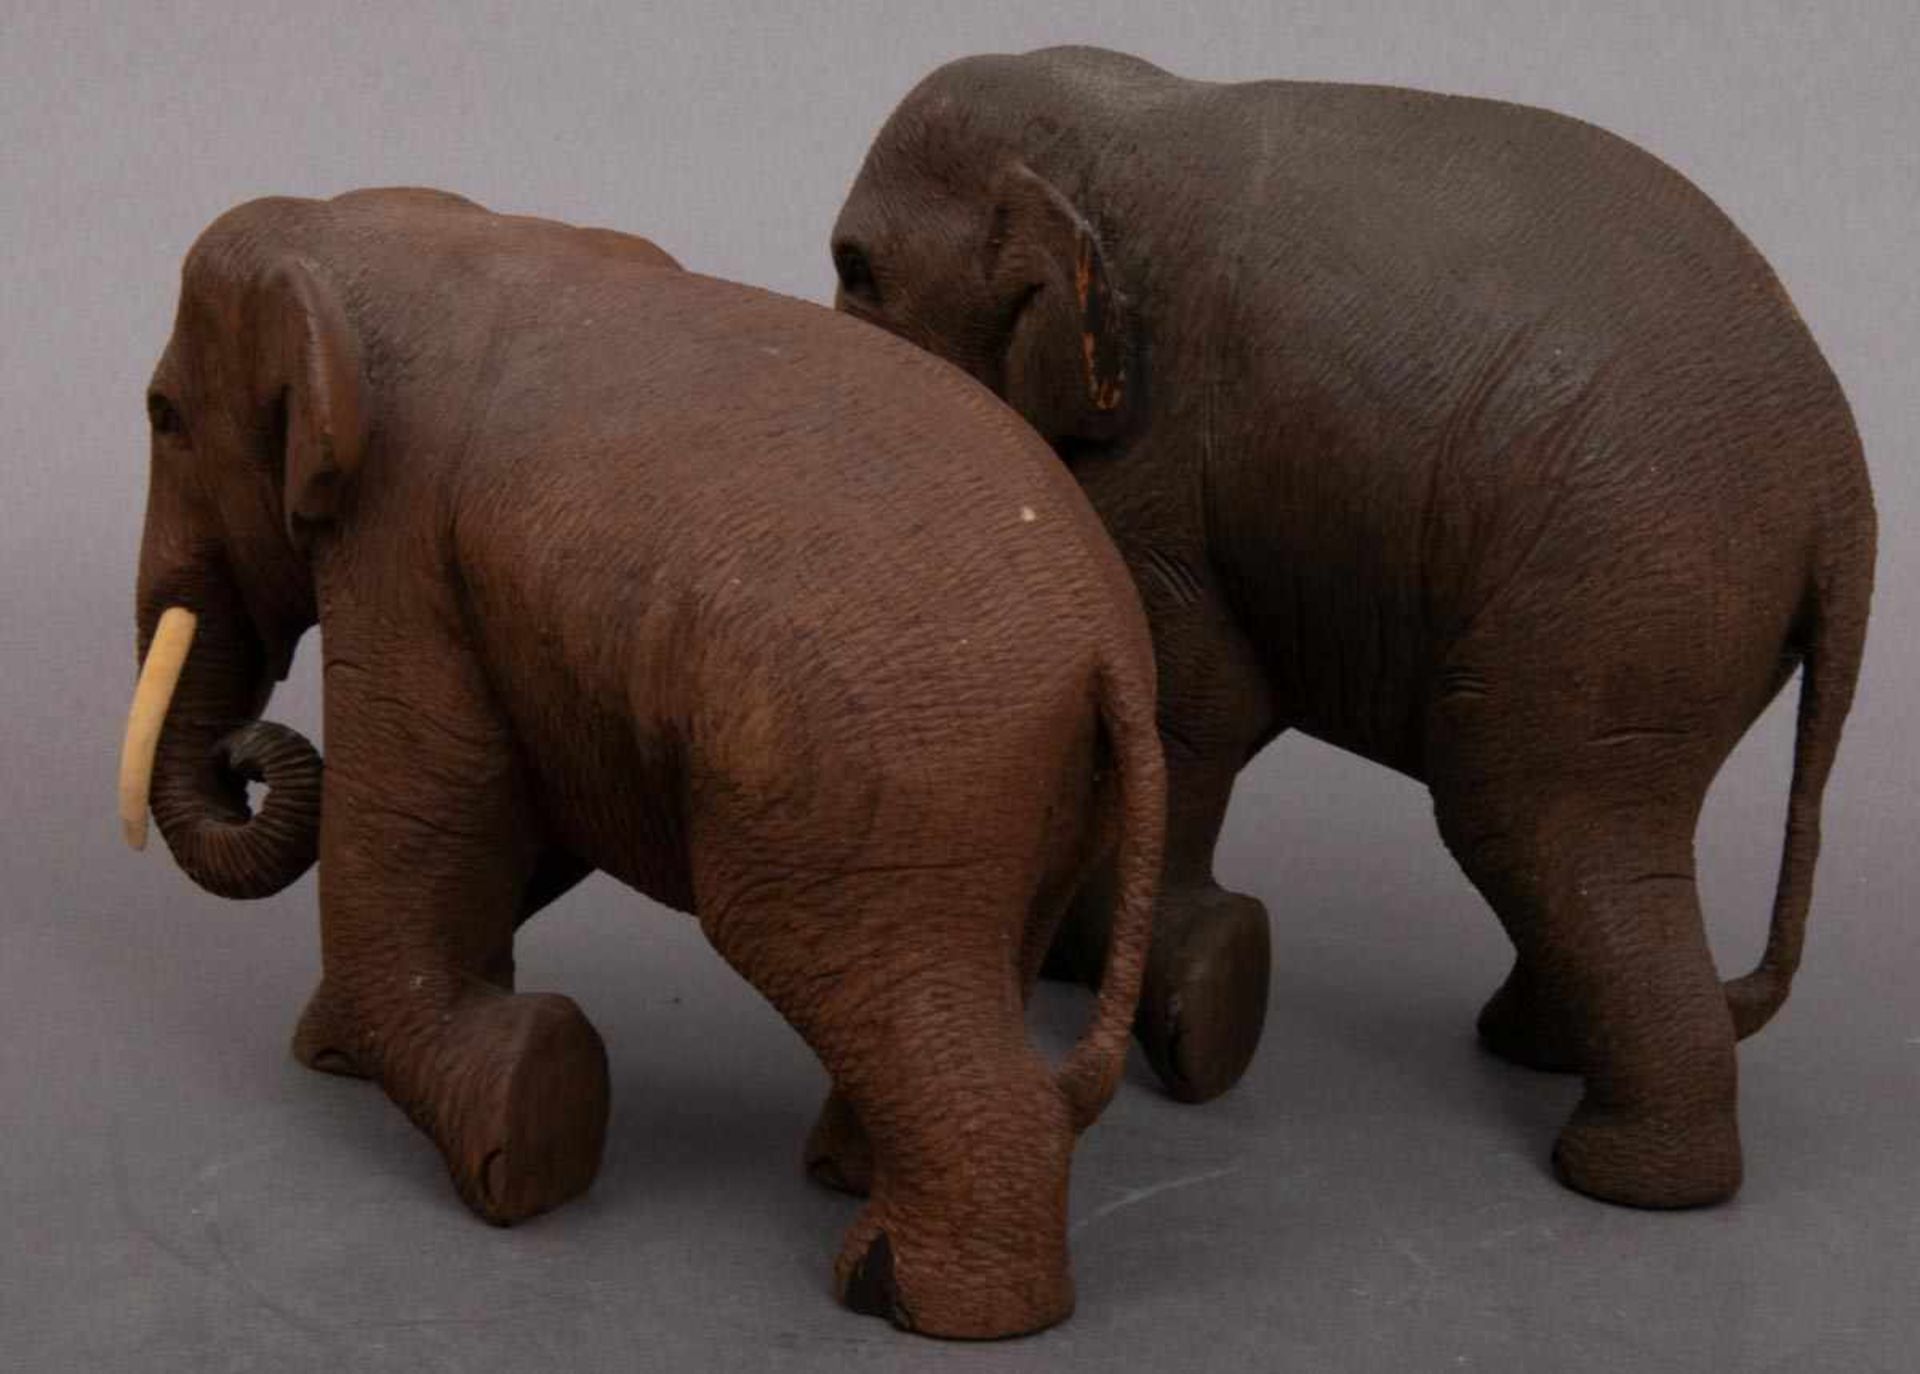 3 geschnitzte Elefanten, dunkles Hartholz, Stoßzähne aus Knochen/Bein. Max. Höhe ca. 15,5 cm, max. - Bild 6 aus 6